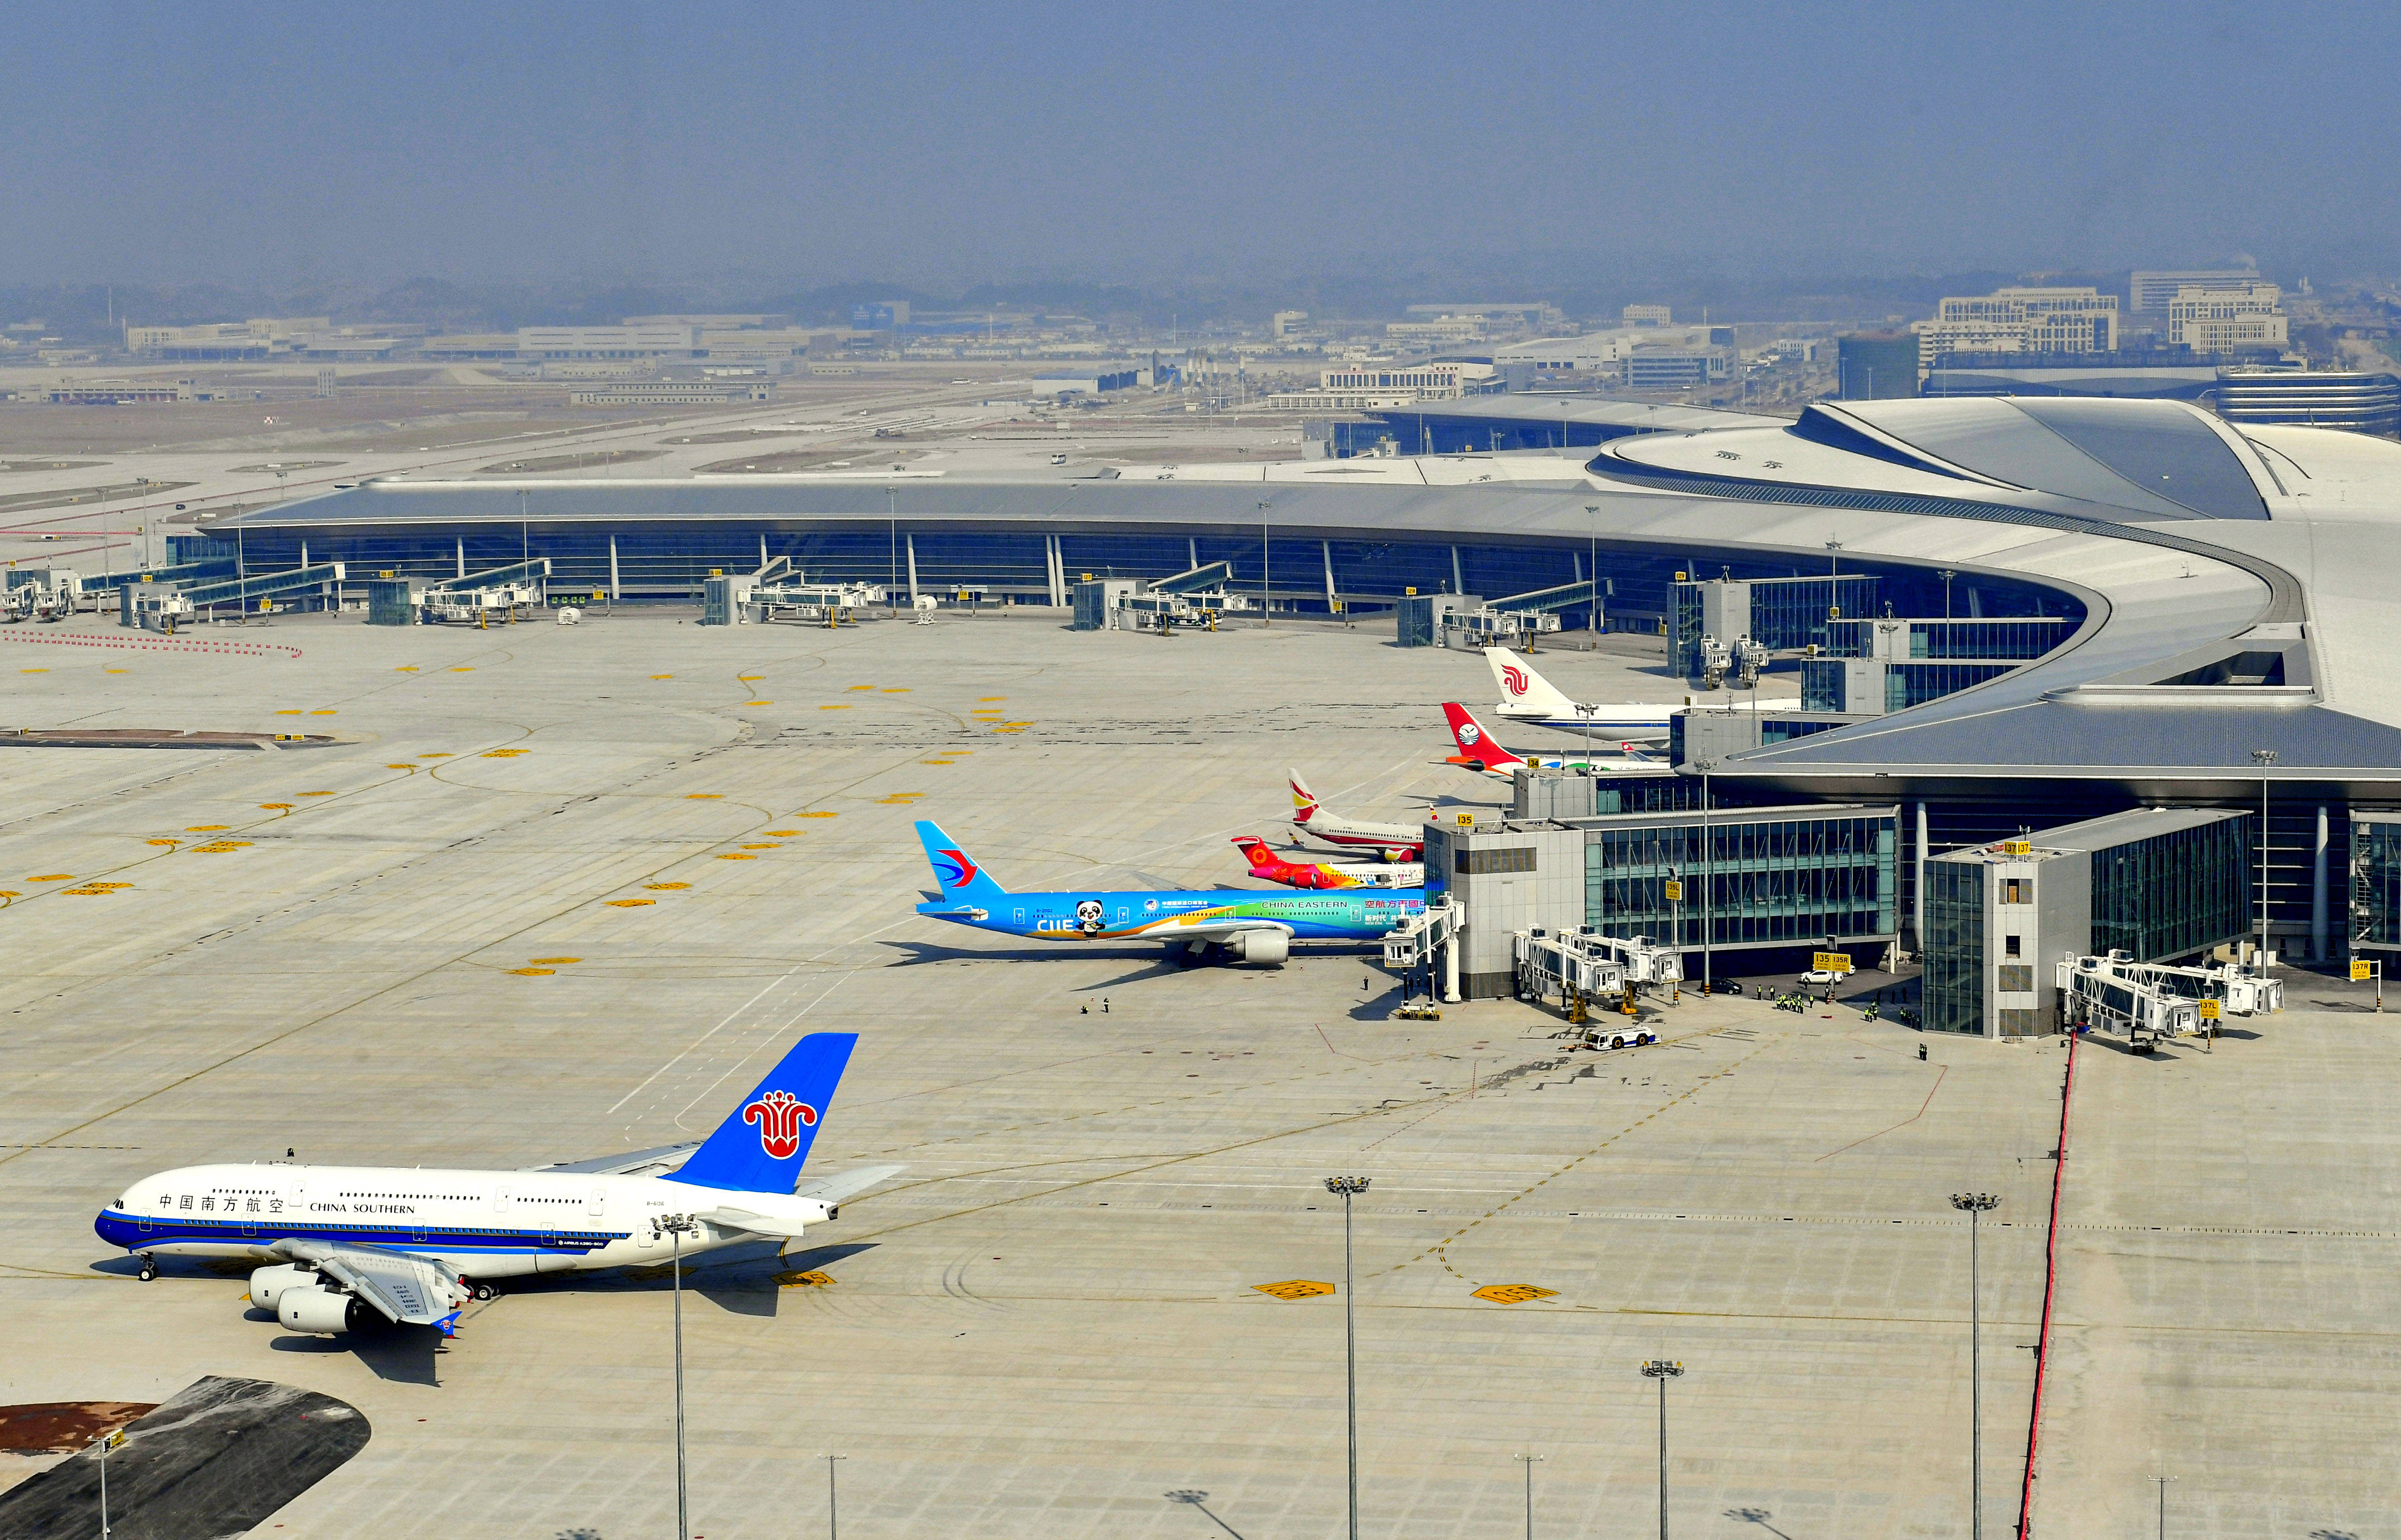 这是2020年9月22日拍摄的北京大兴国际机场内景.